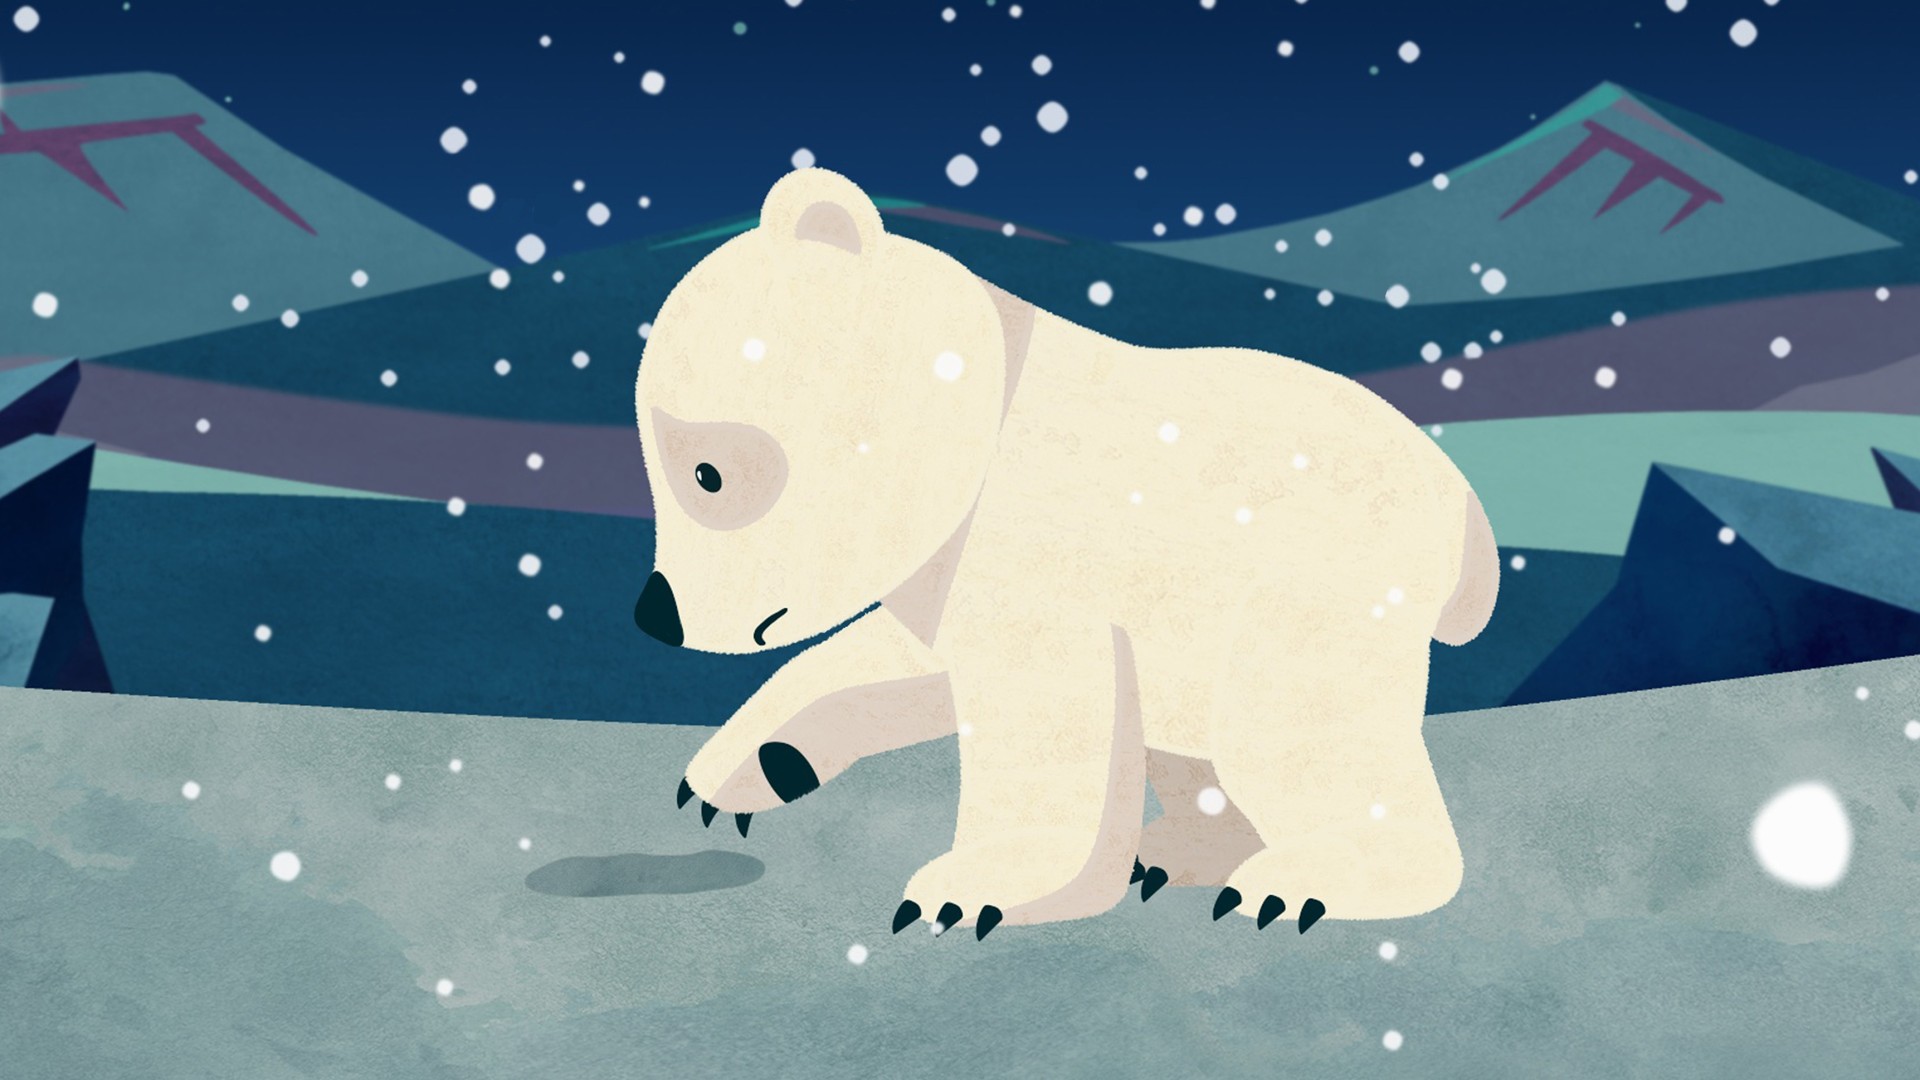 《小白熊的極光之歌》以小北極熊走過北極尋找媽媽為主題-圖片